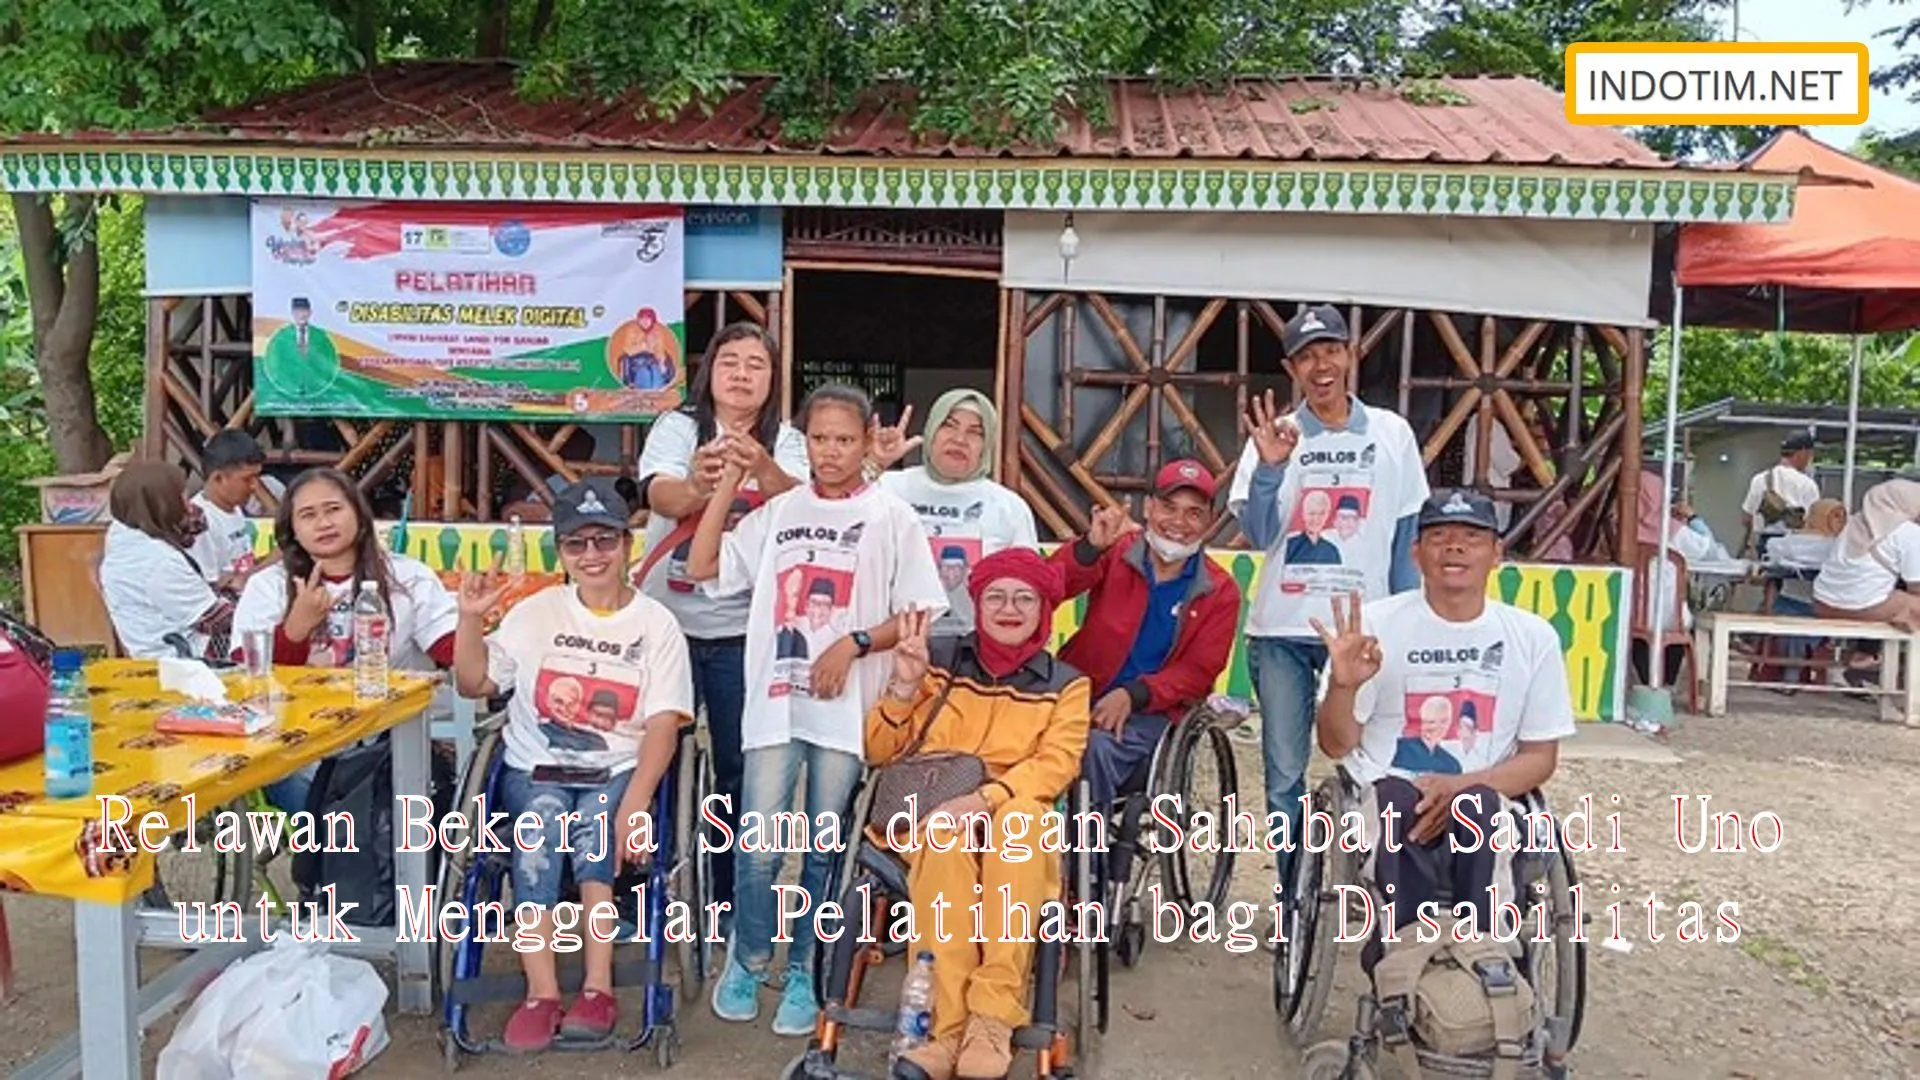 Relawan Bekerja Sama dengan Sahabat Sandi Uno untuk Menggelar Pelatihan bagi Disabilitas